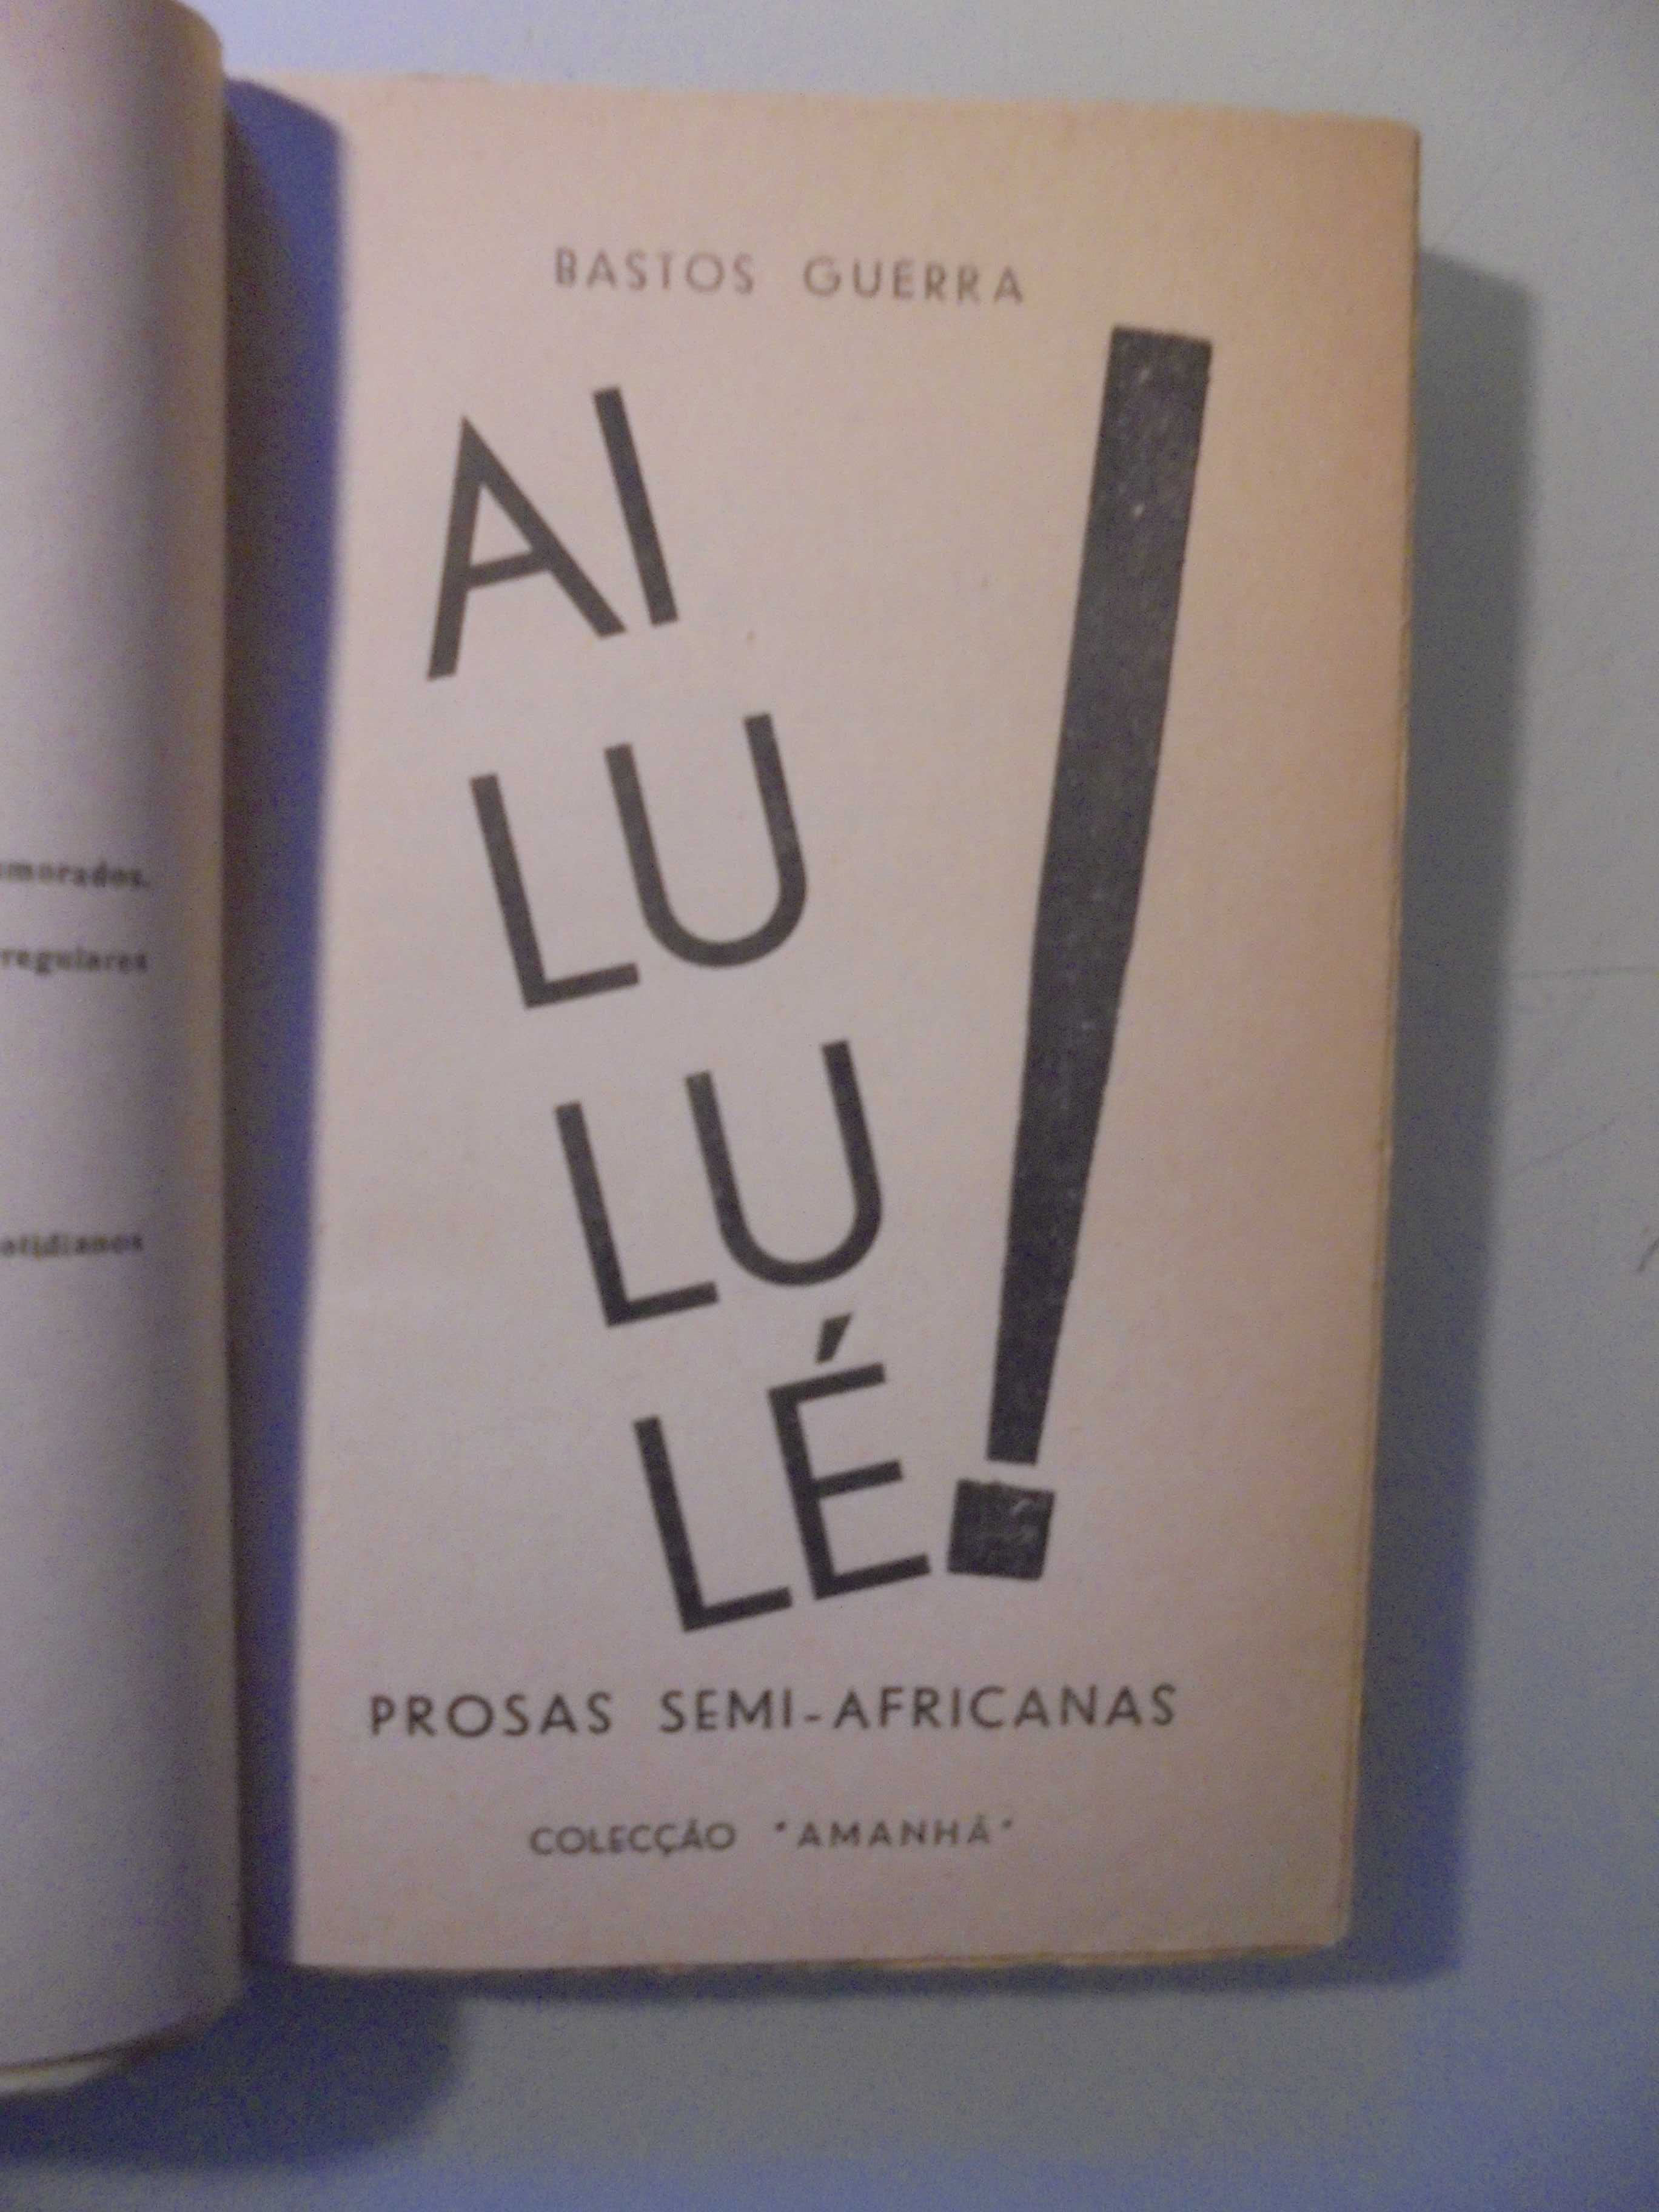 Guerra (Bastos);Ai Lu Lu Lé-Prosas semi Africanas,